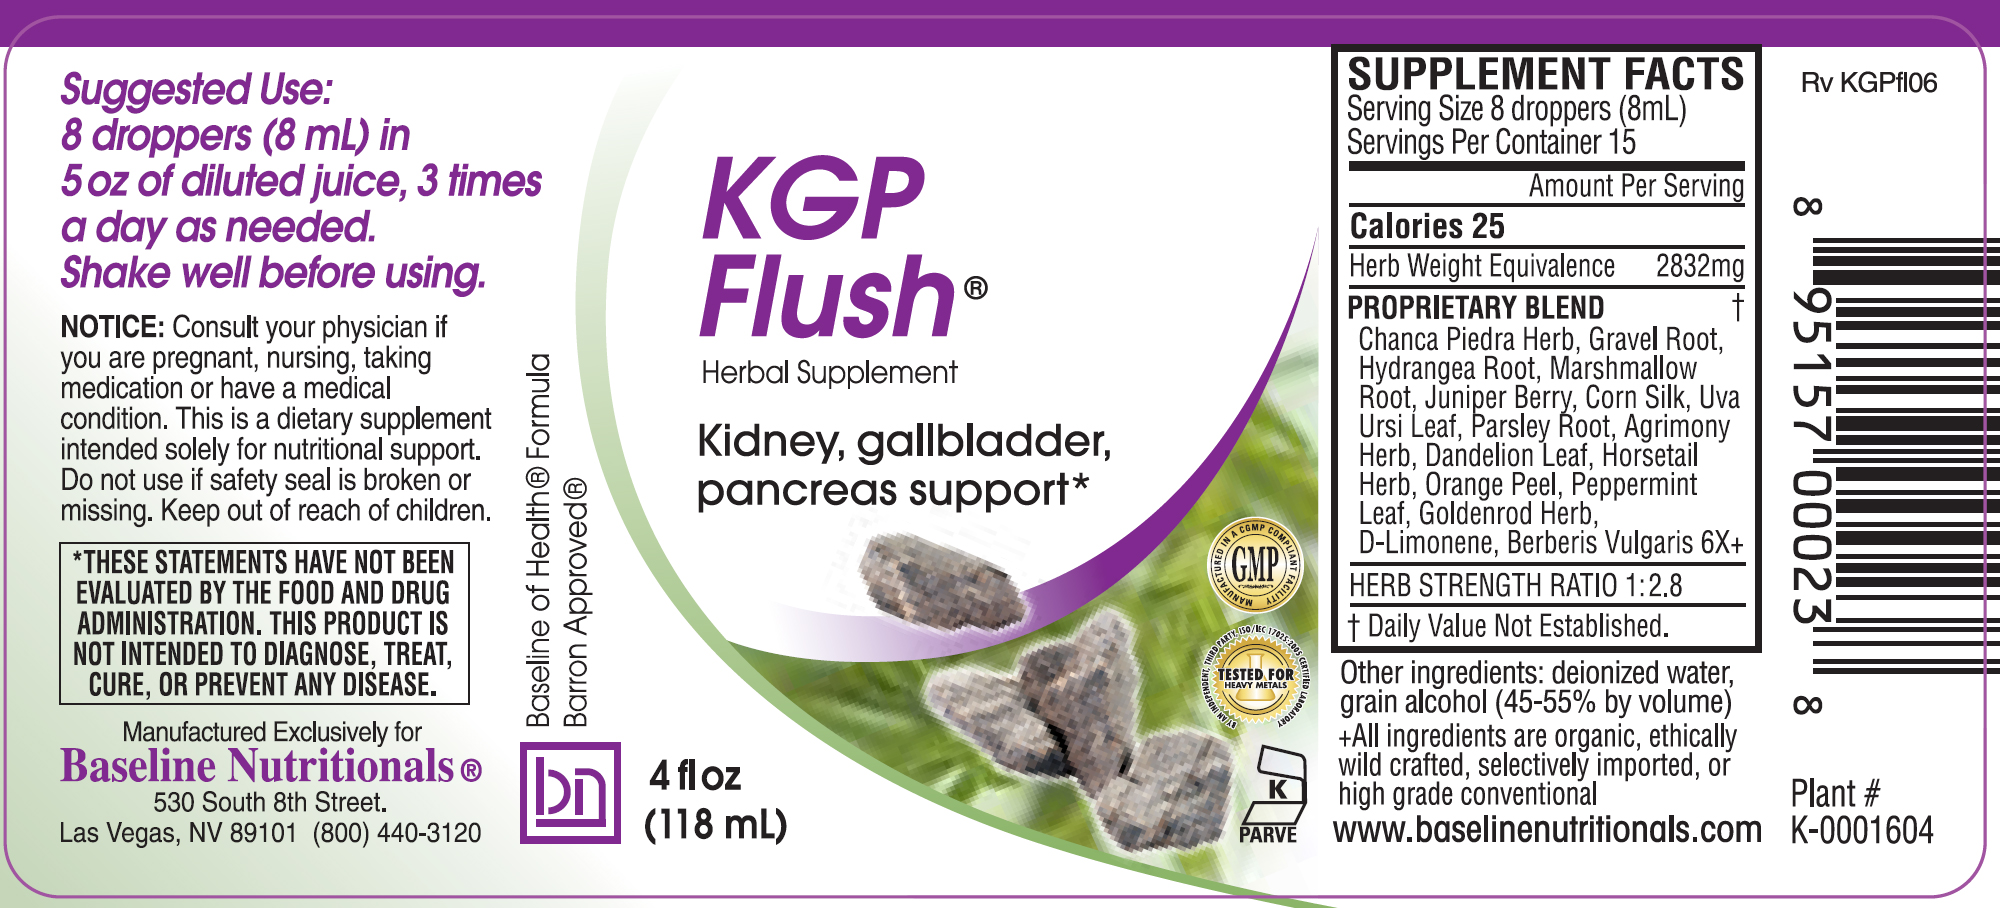 KGP-Flush label